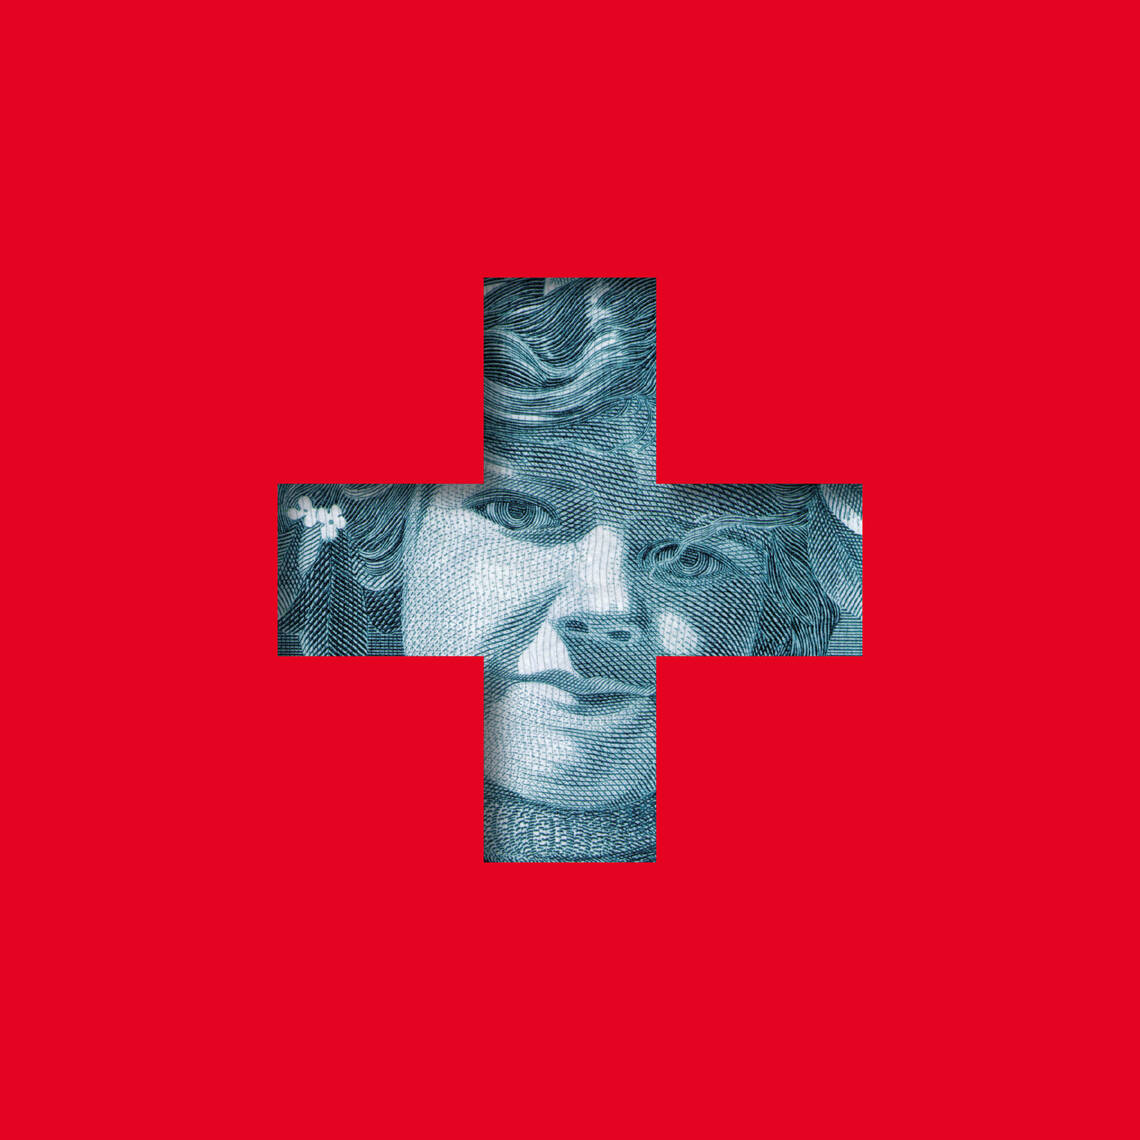 Immagini chiave della mostra "Storia della Svizzera